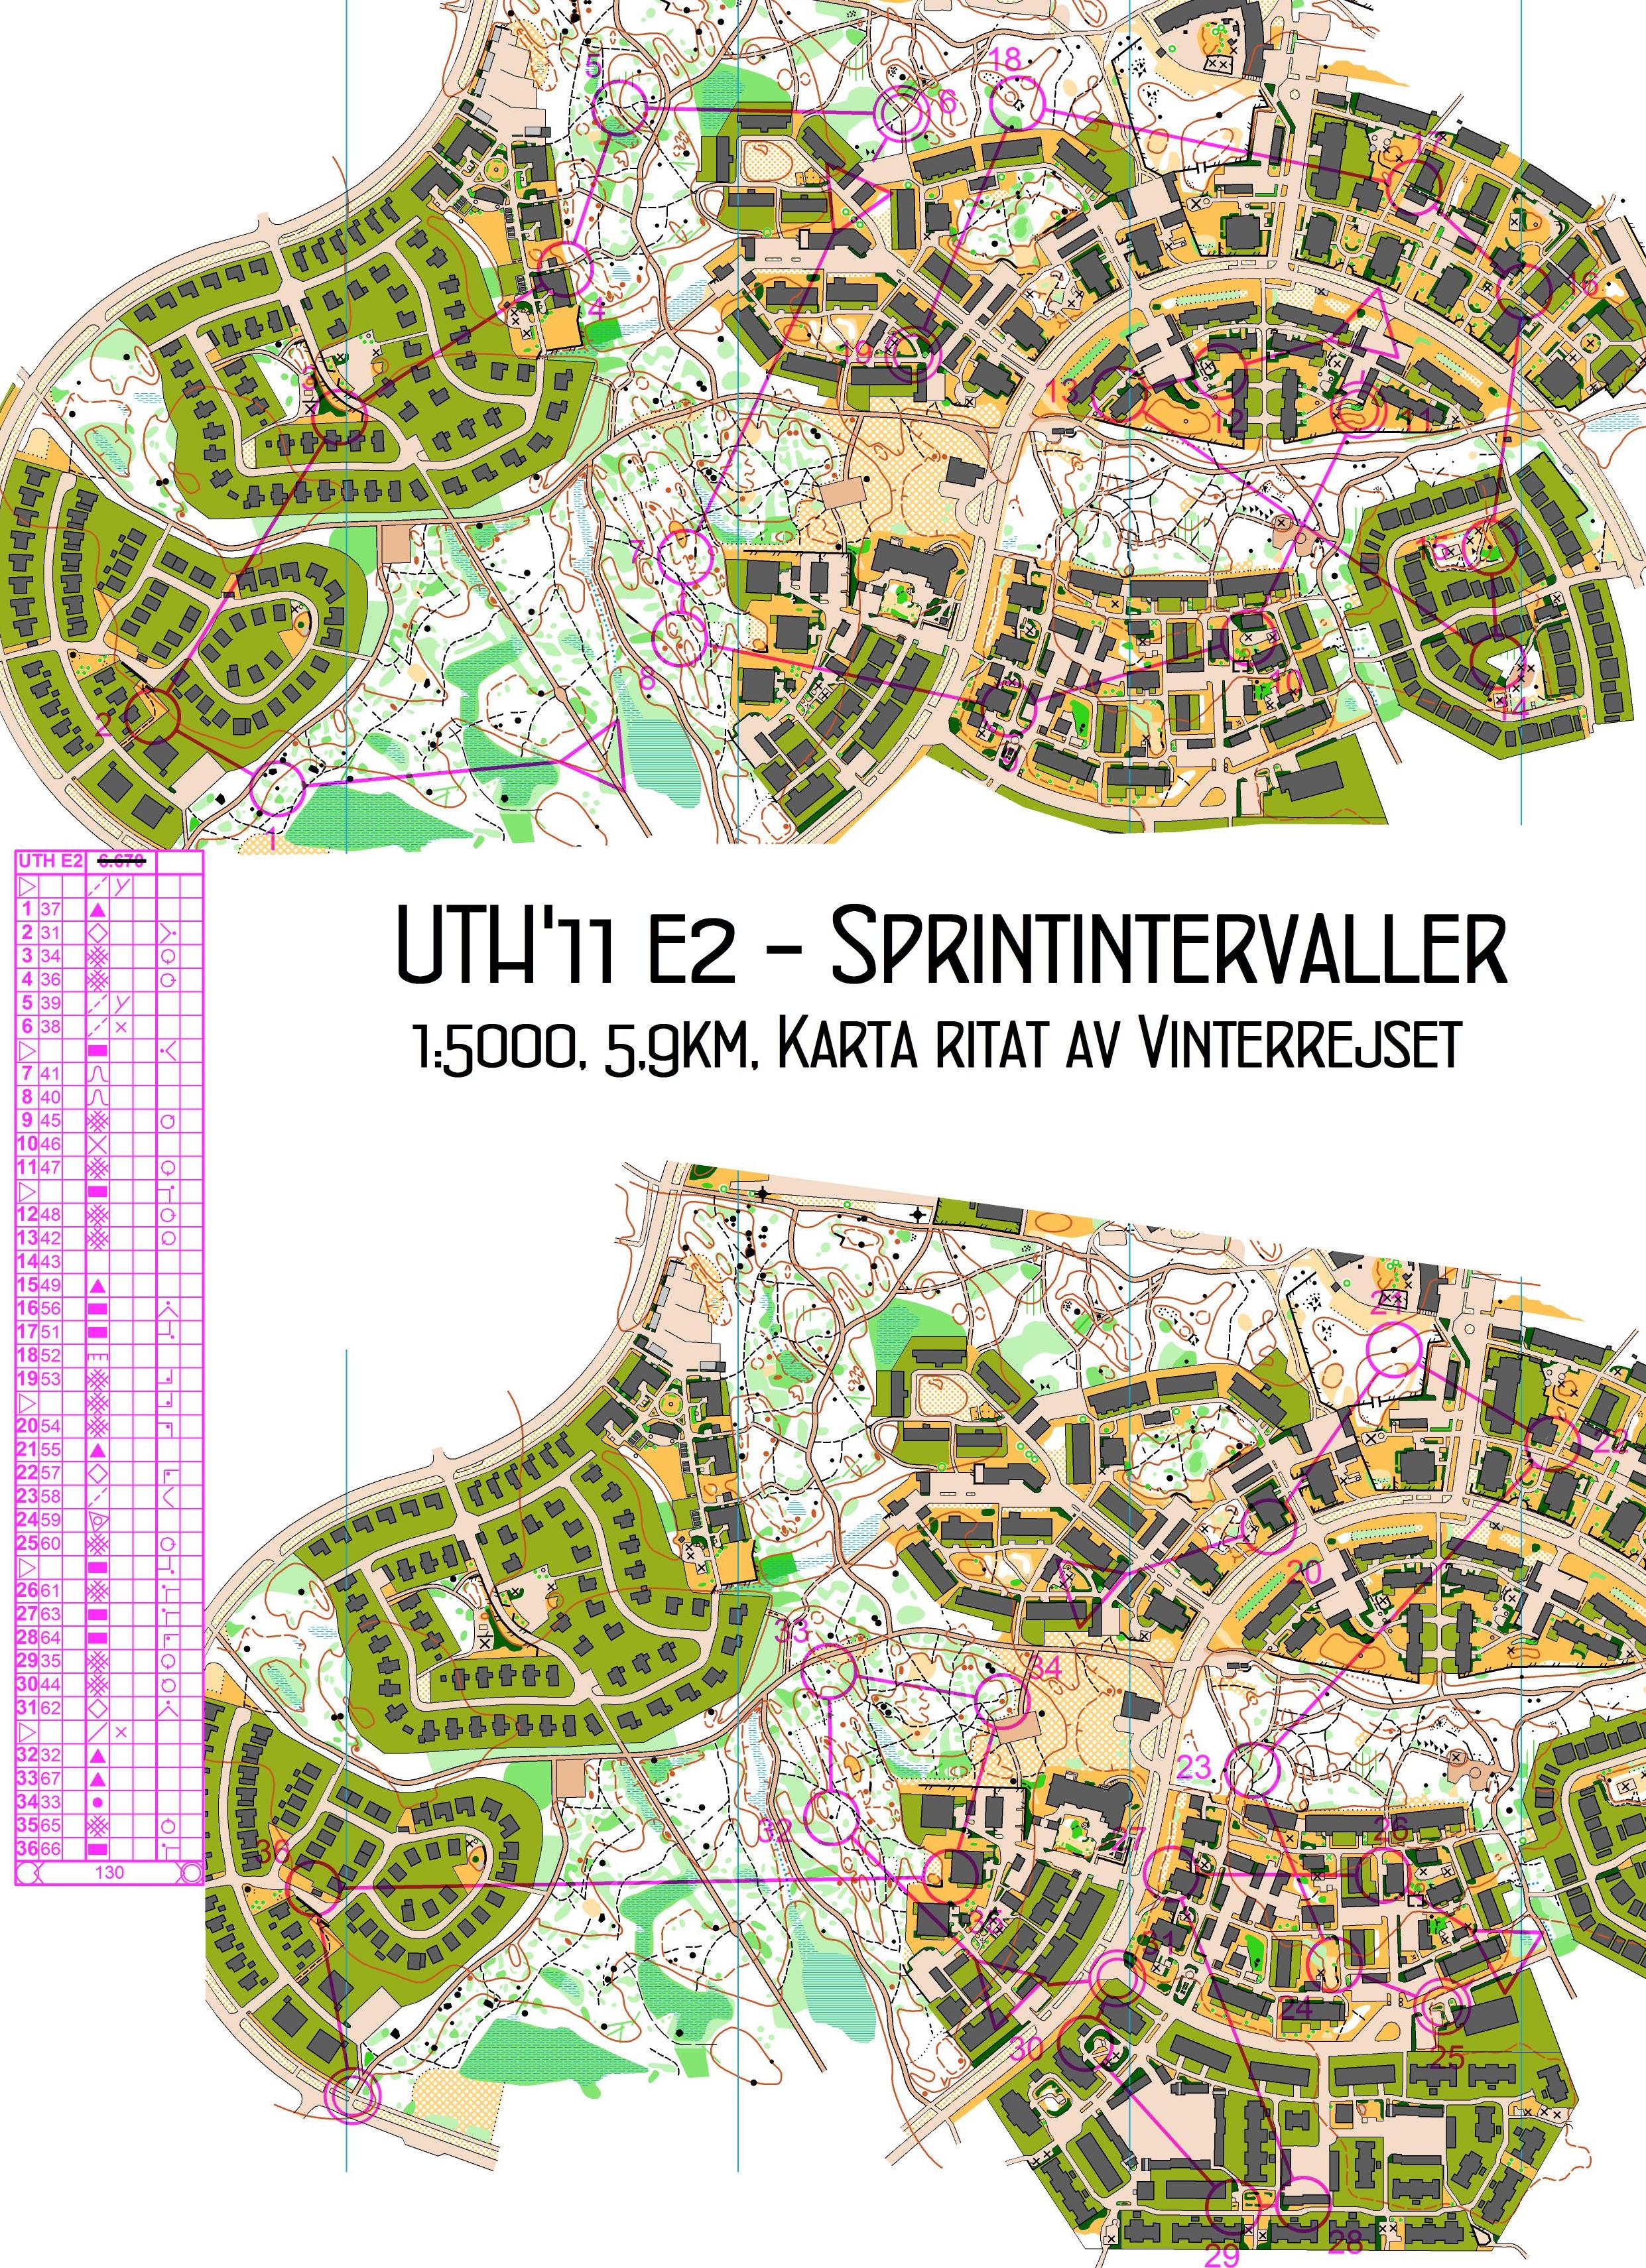 UTH, Sprintintervaller, E2 (2011-12-09)